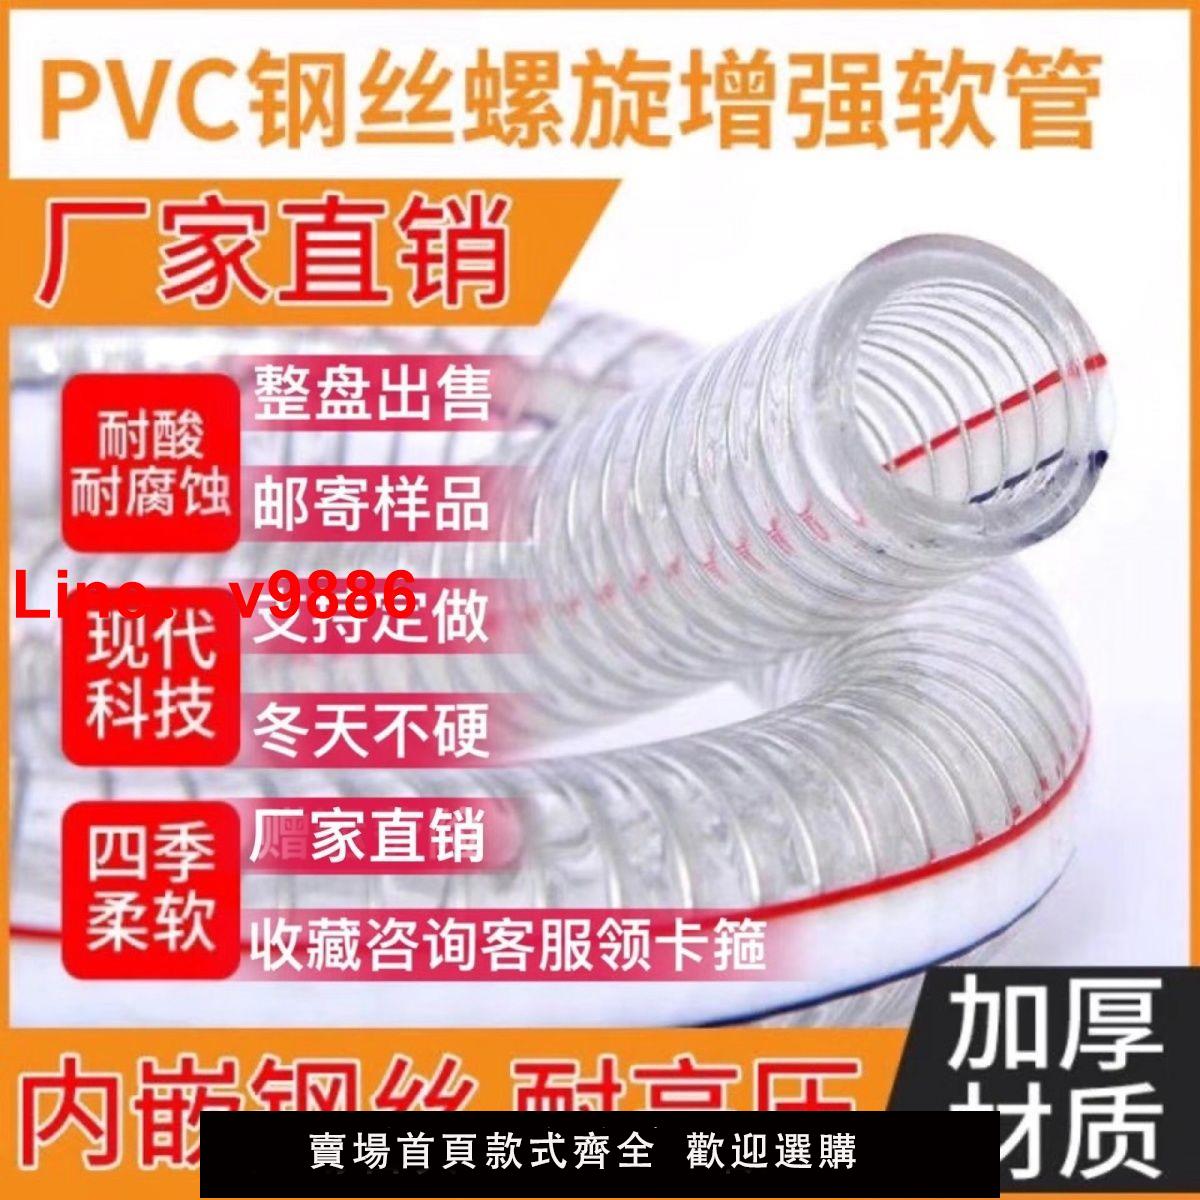 【台灣公司 超低價】PVC鋼絲軟管耐高溫防腐蝕四季柔軟1寸2寸加厚防凍輸油軟管水泵管